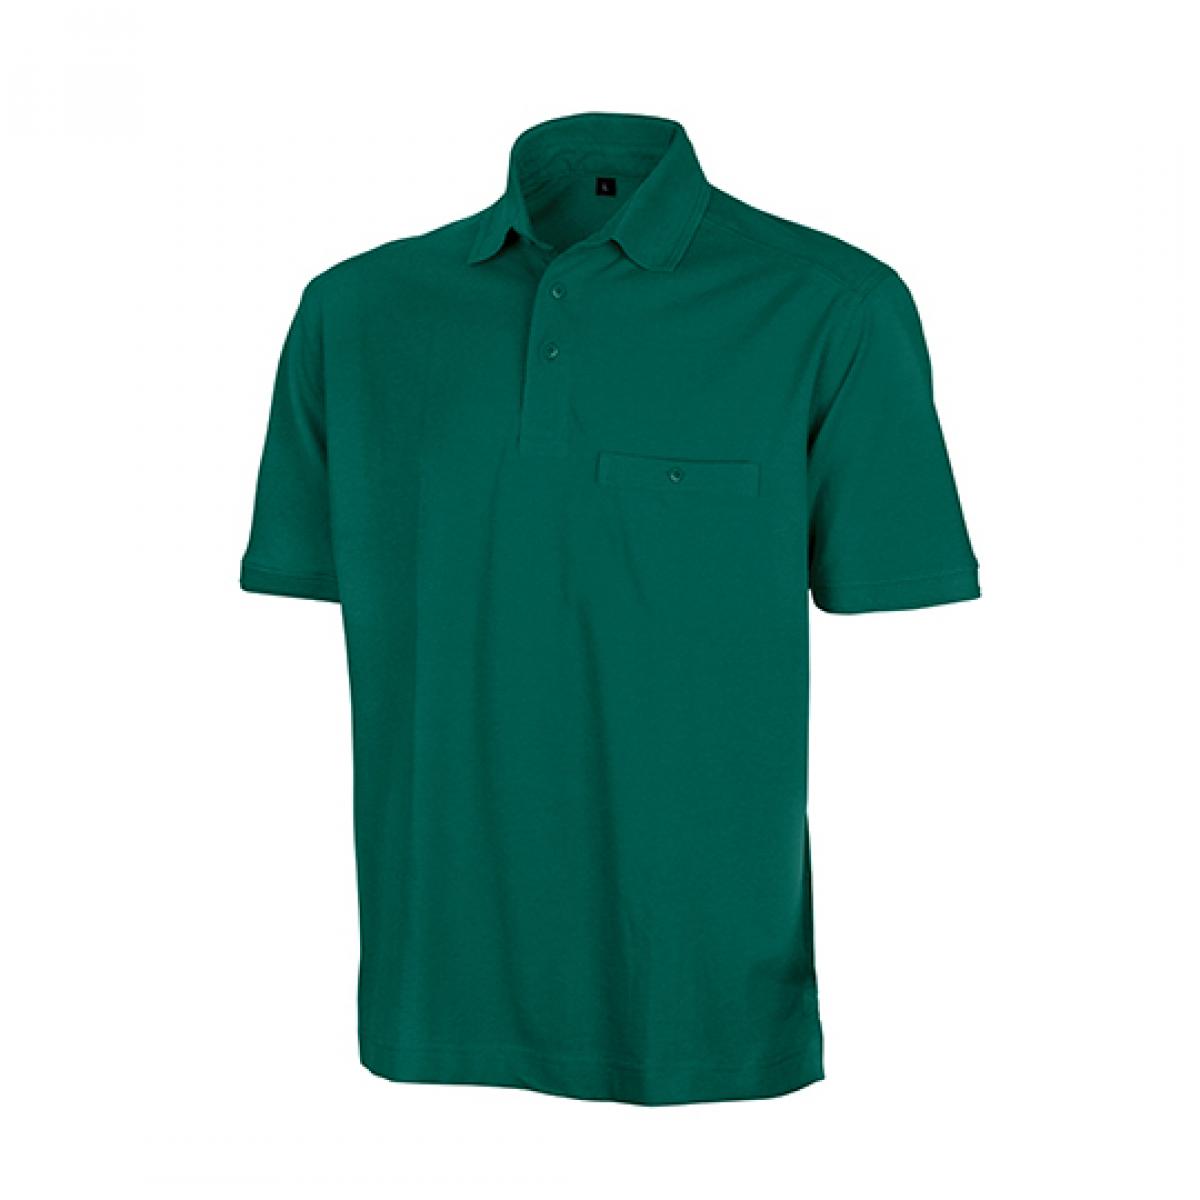 Hersteller: Result WORK-GUARD Herstellernummer: R312X Artikelbezeichnung: Herren Apex Polo Shirt / Strapazierfähig aus Mischgewebe Farbe: Bottle Green